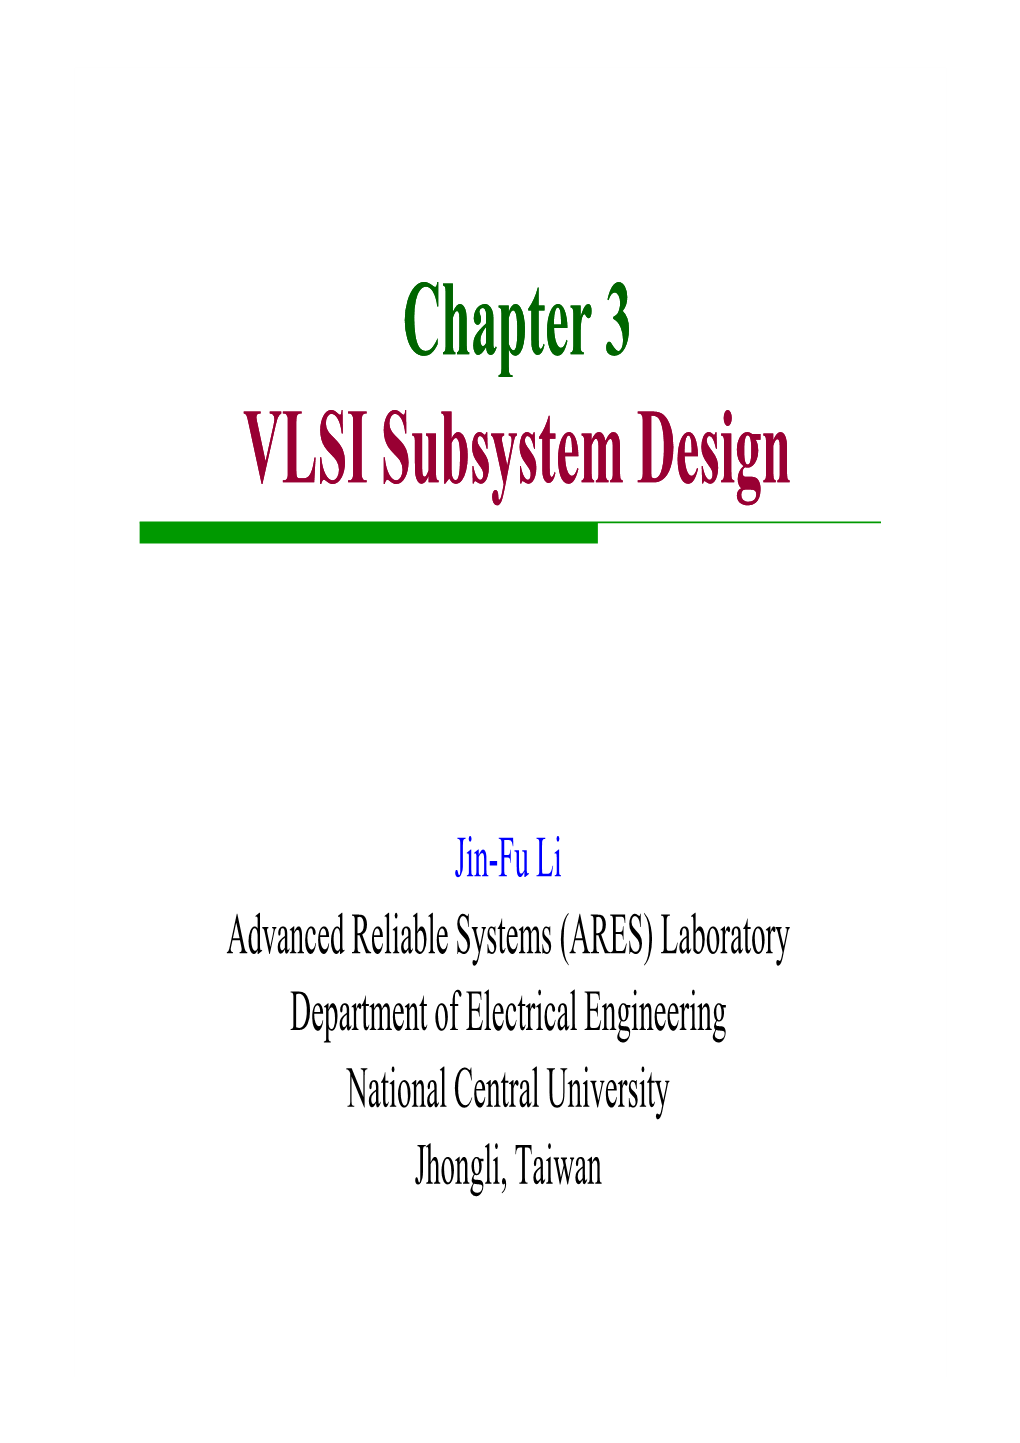 Chapter 3 VLSI Subsystem Design